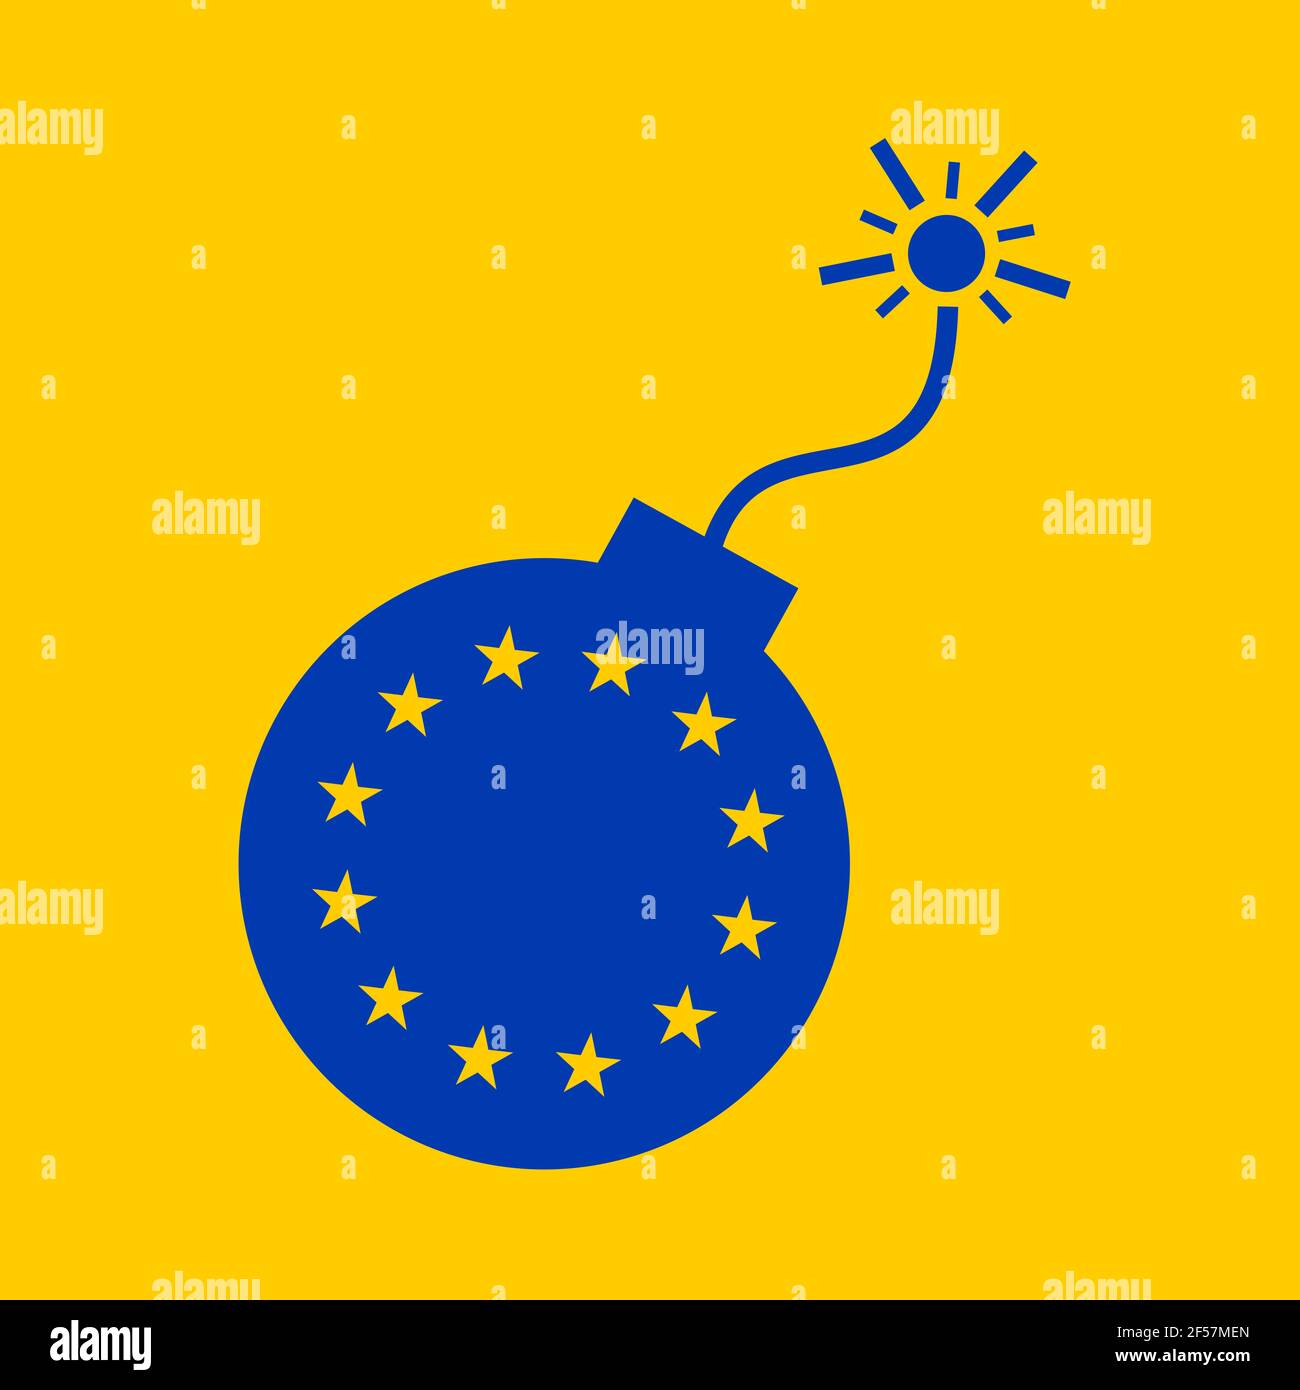 Unión Europea y la UE como bomba de tiempo y dispositivo explosivo durante la cuenta atrás - metáfora de la caída, el colapso, el problema, los problemas y el peligro. Vector illustrati Foto de stock